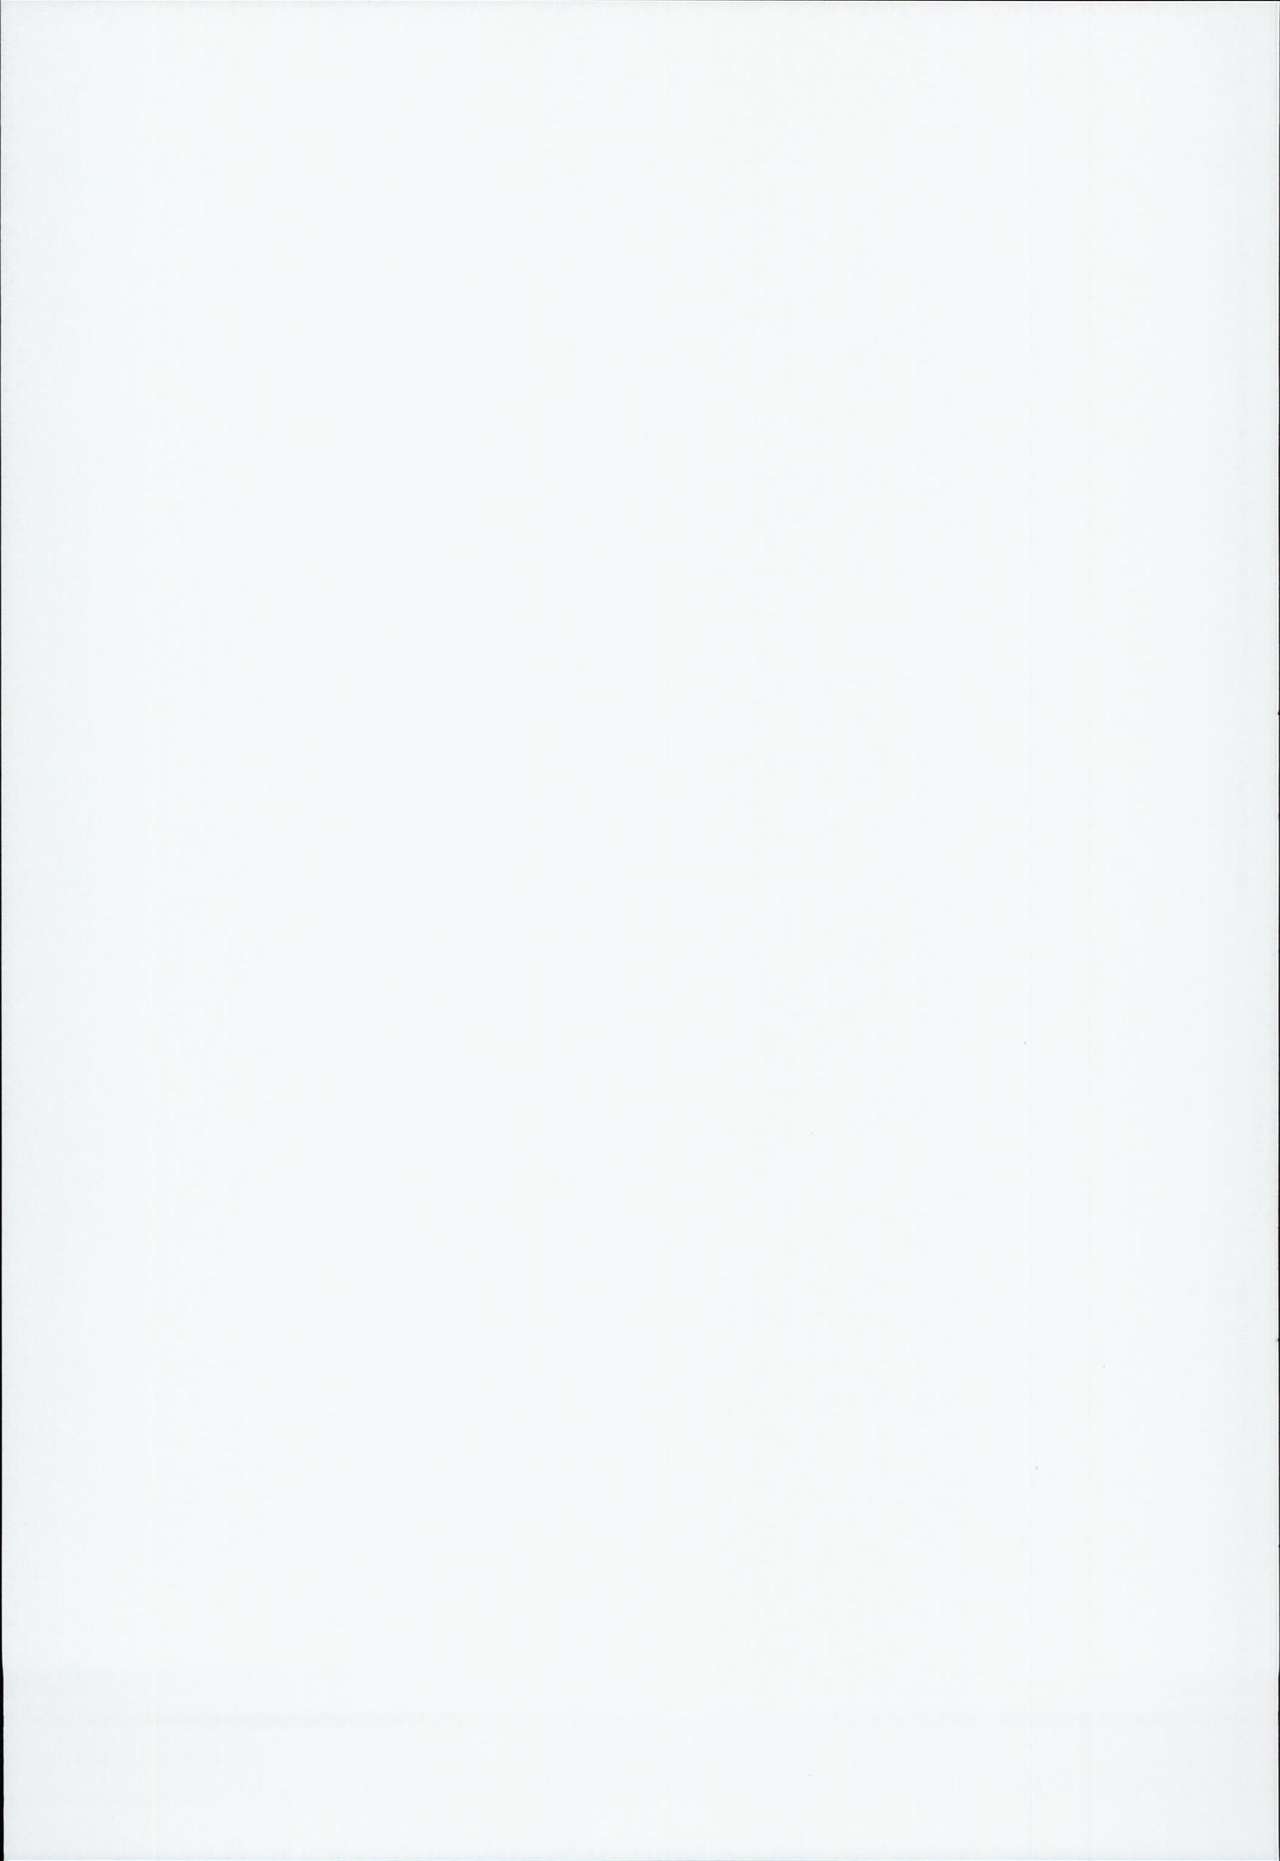 (C90) [LemonMaiden (蒼海)] 吸精魔力中毒3 (Fate/kaleid liner プリズマ☆イリヤ) [中国翻訳]